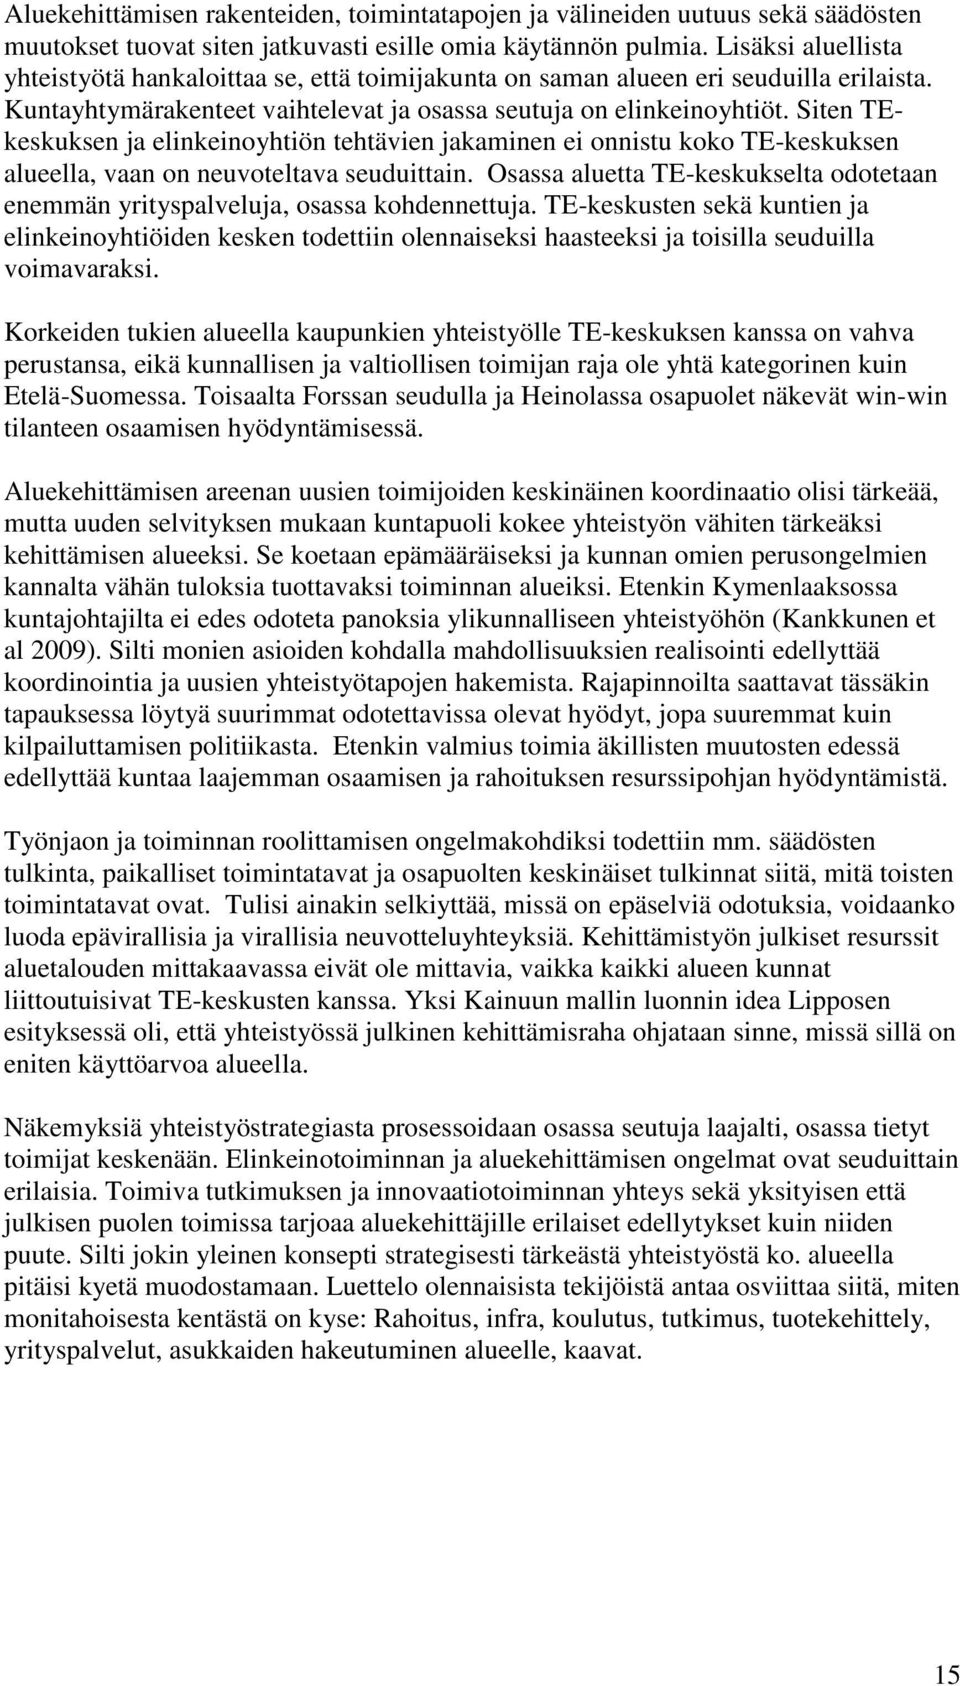 Siten TEkeskuksen ja elinkeinoyhtiön tehtävien jakaminen ei onnistu koko TE-keskuksen alueella, vaan on neuvoteltava seuduittain.